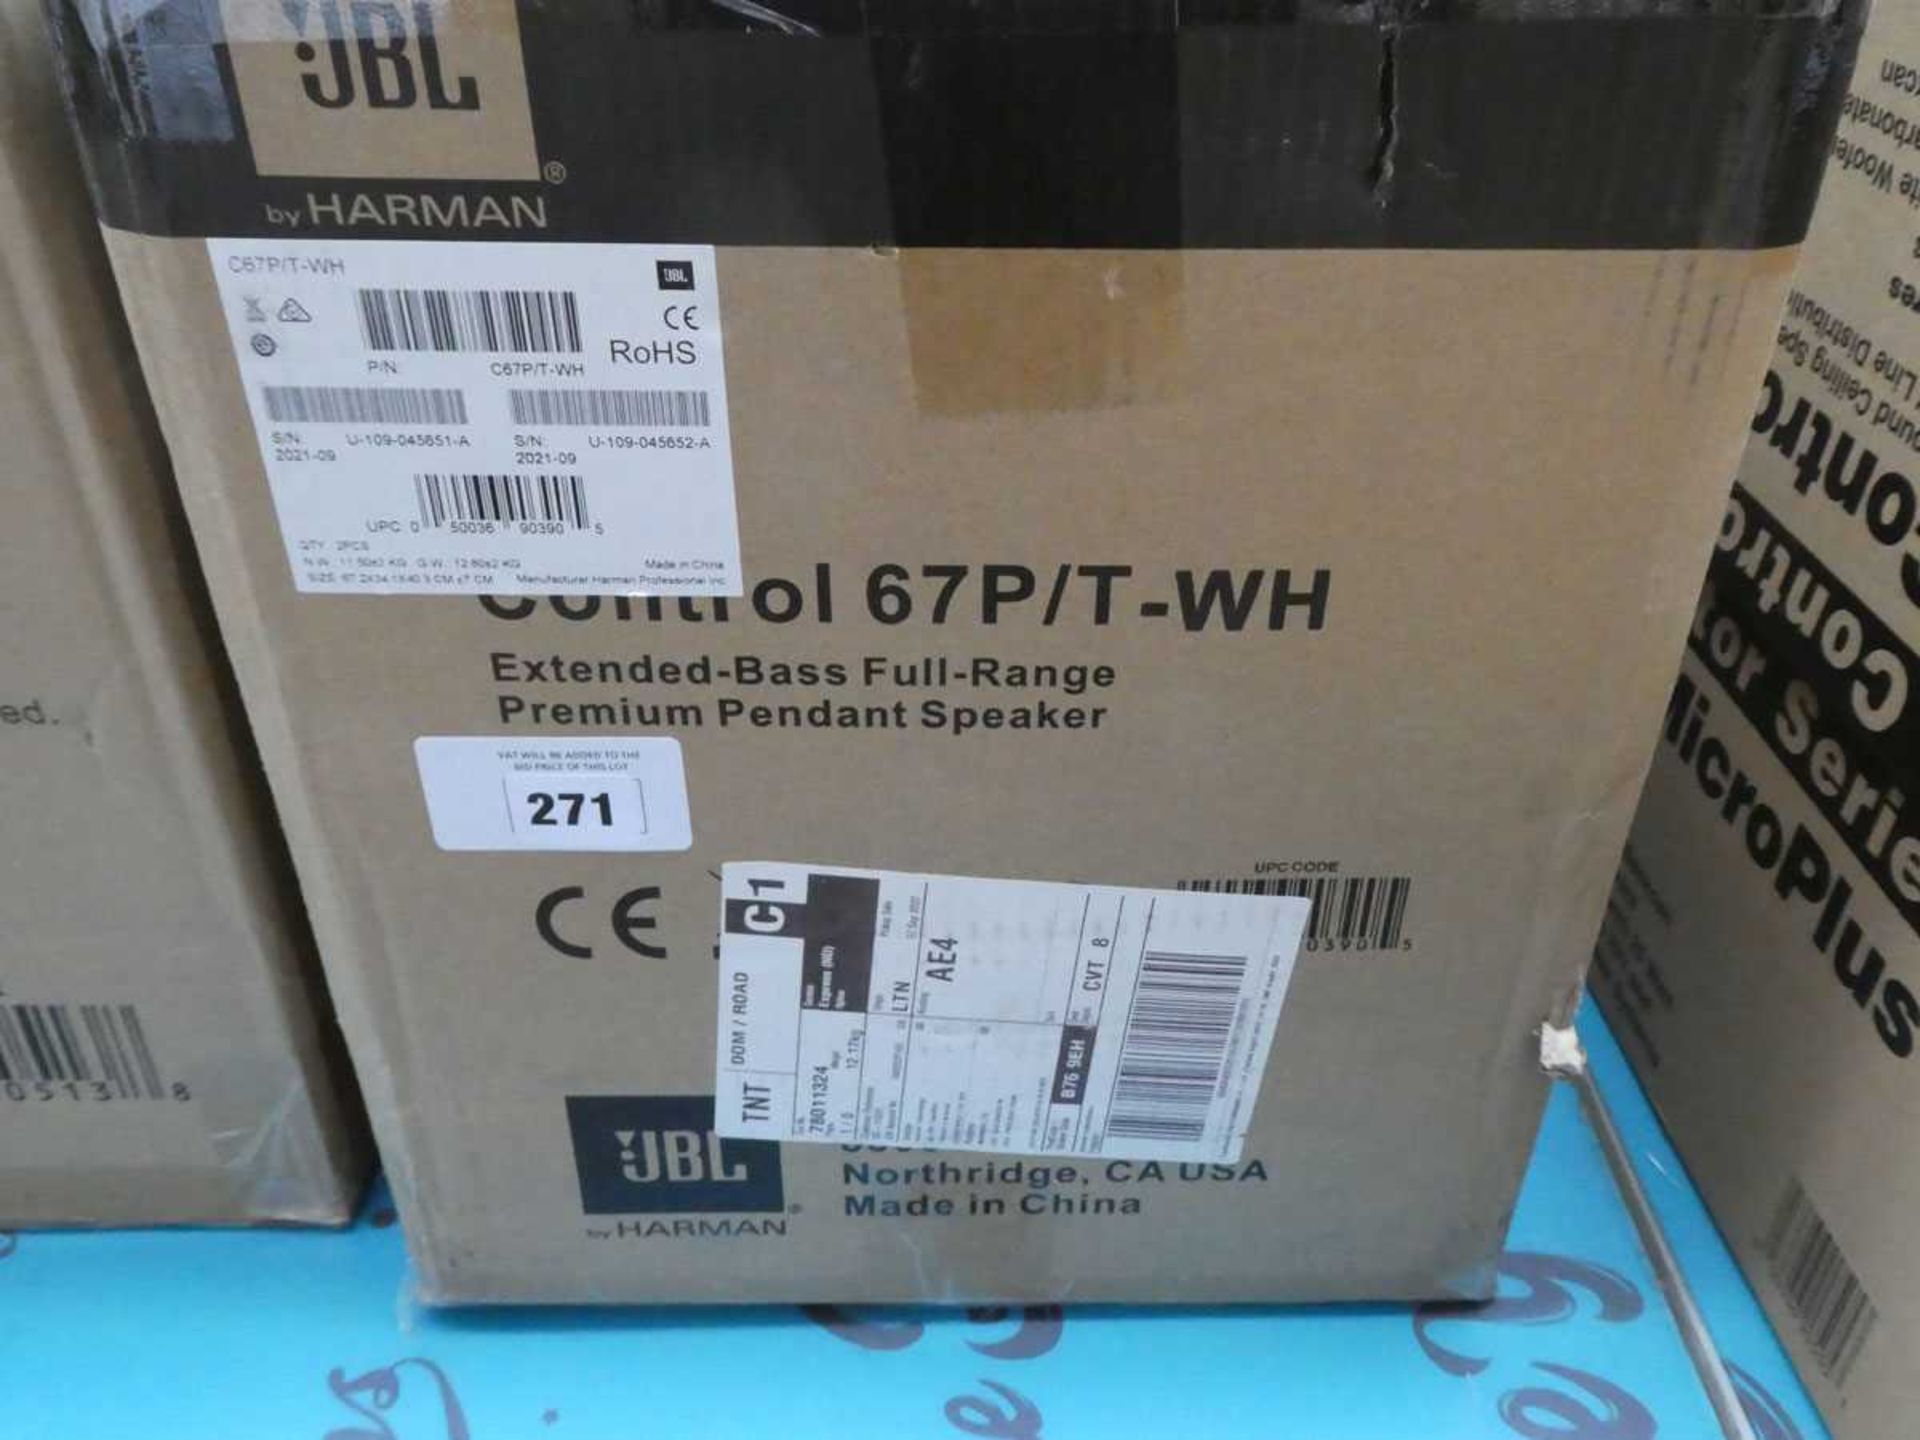 +VAT 1x JBL Control 67e/t WH extended base full-range premium pendant speaker with box - Image 2 of 2